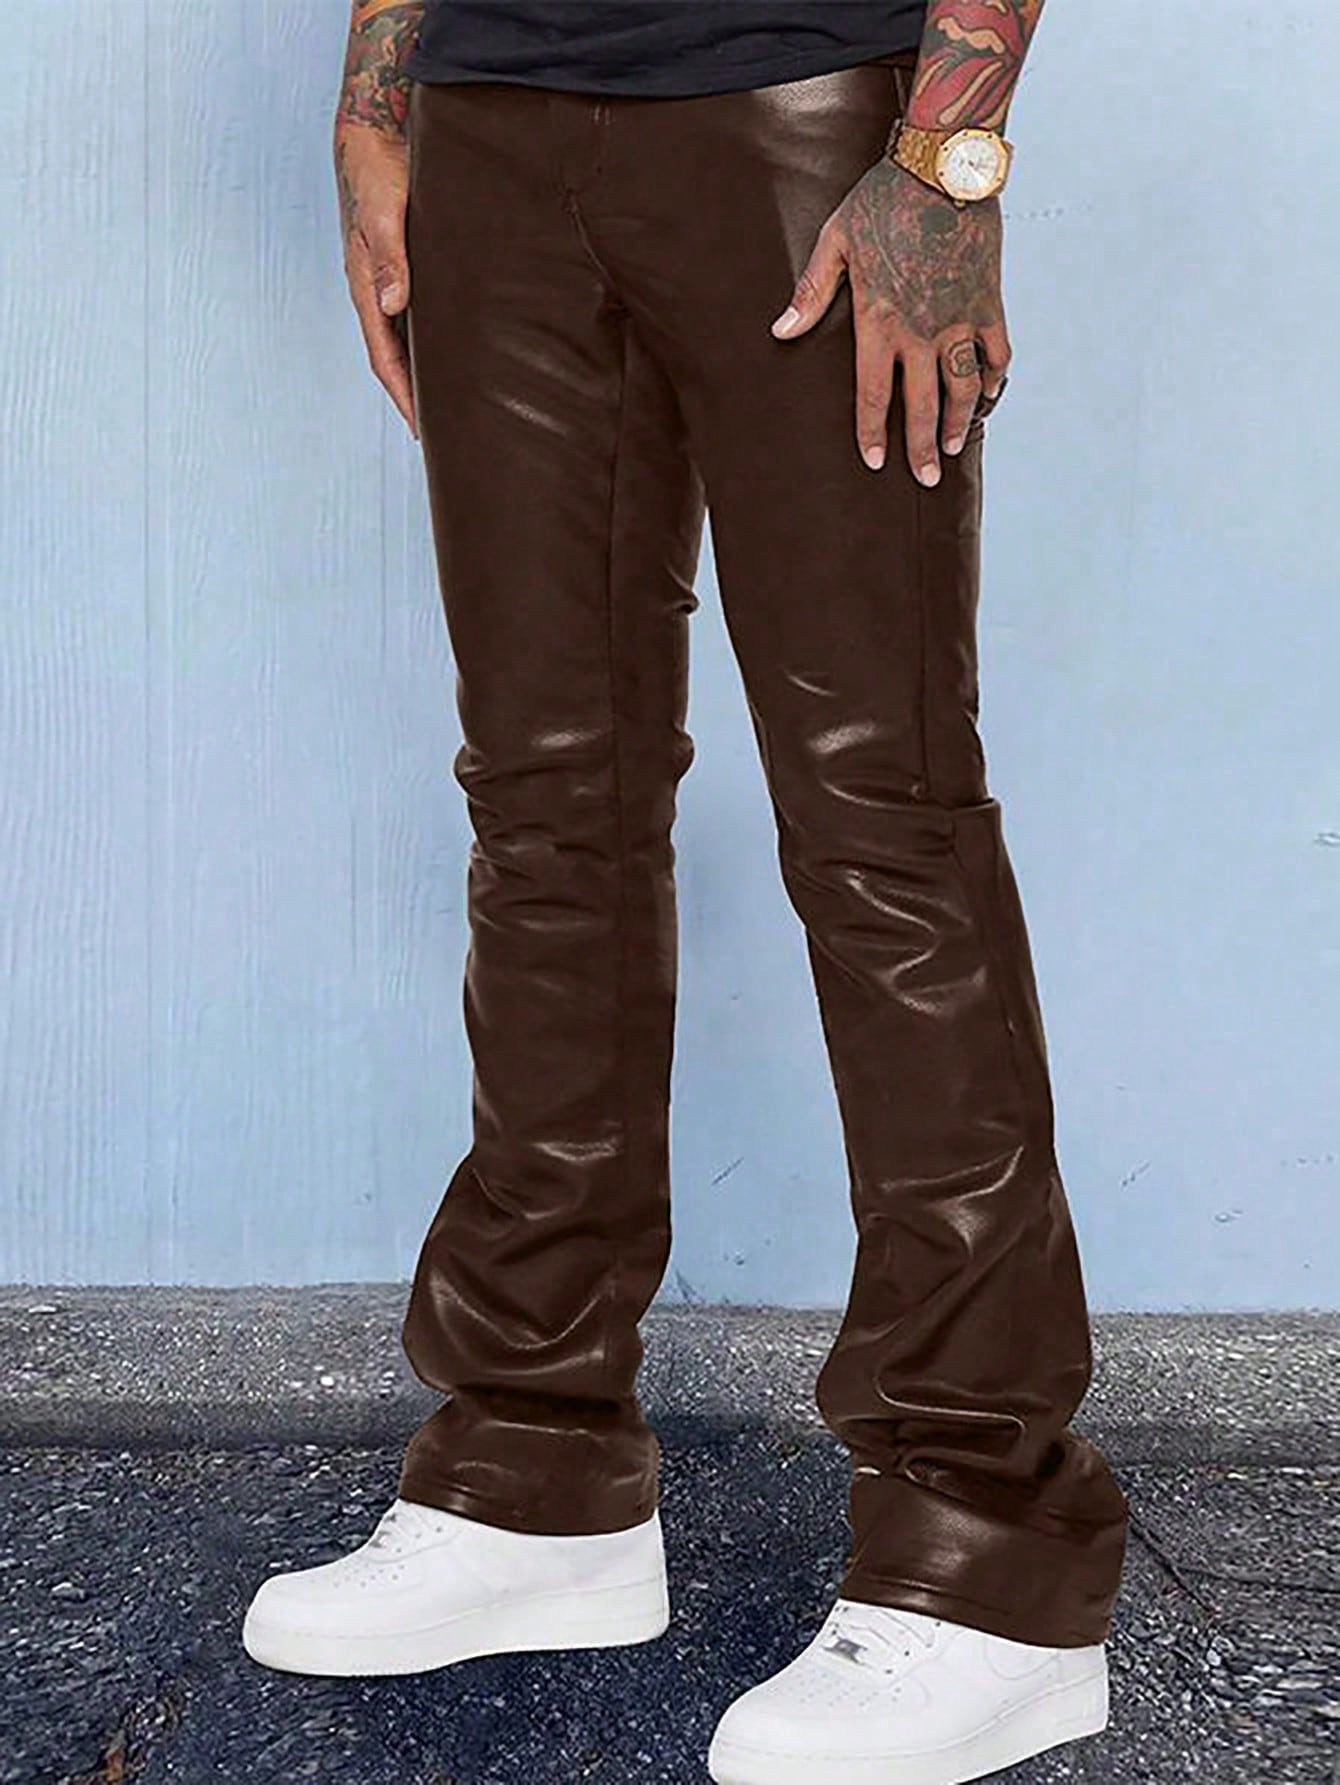 Мужские брюки с карманами и клапанами Manfinity EMRG, кофейный коричневый весенние модные мужские модные брюки из искусственной кожи в рок стиле мужские облегающие мотоциклетные брюки из искусственной кожи